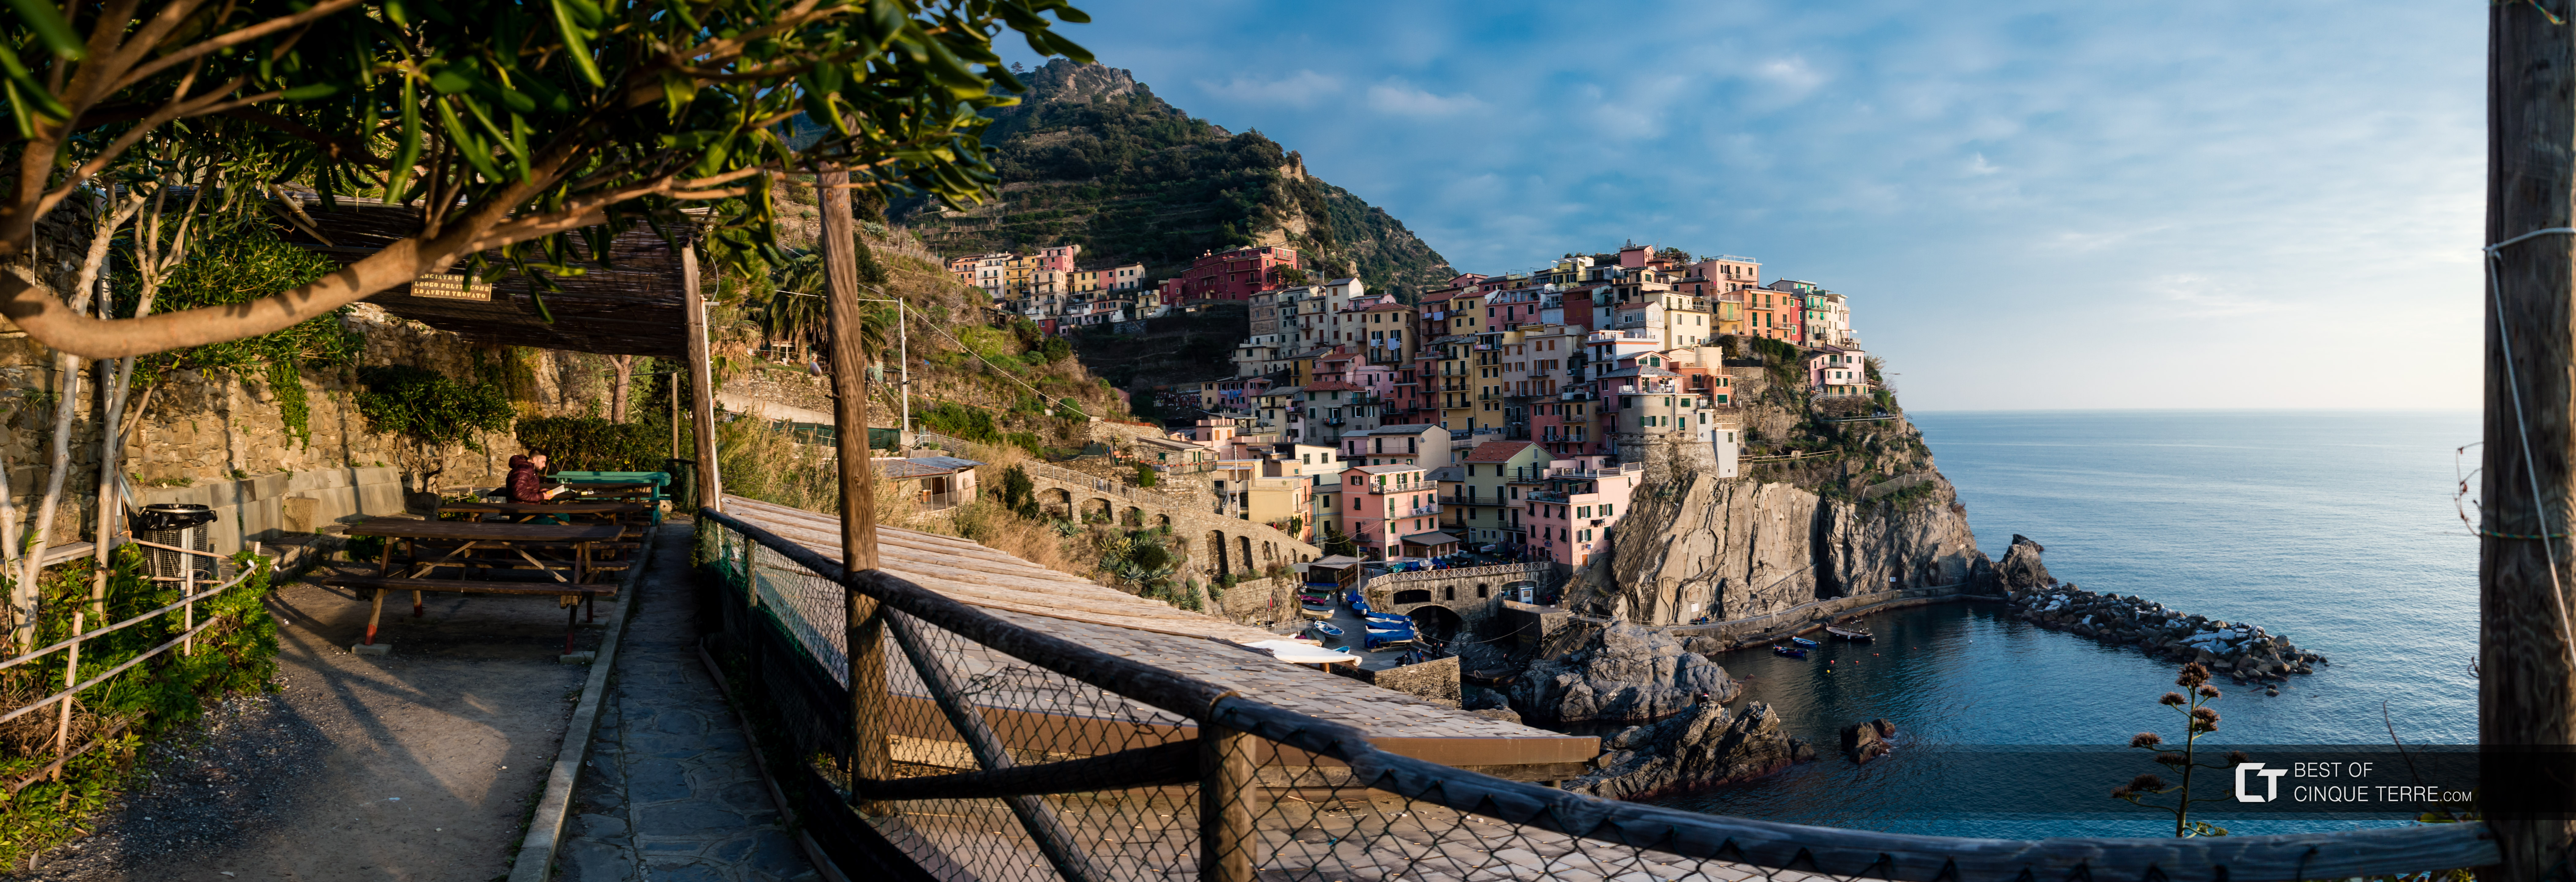 Panorámica de la zona de recreación y el pueblo, Manarola, Cinque Terre, Italia